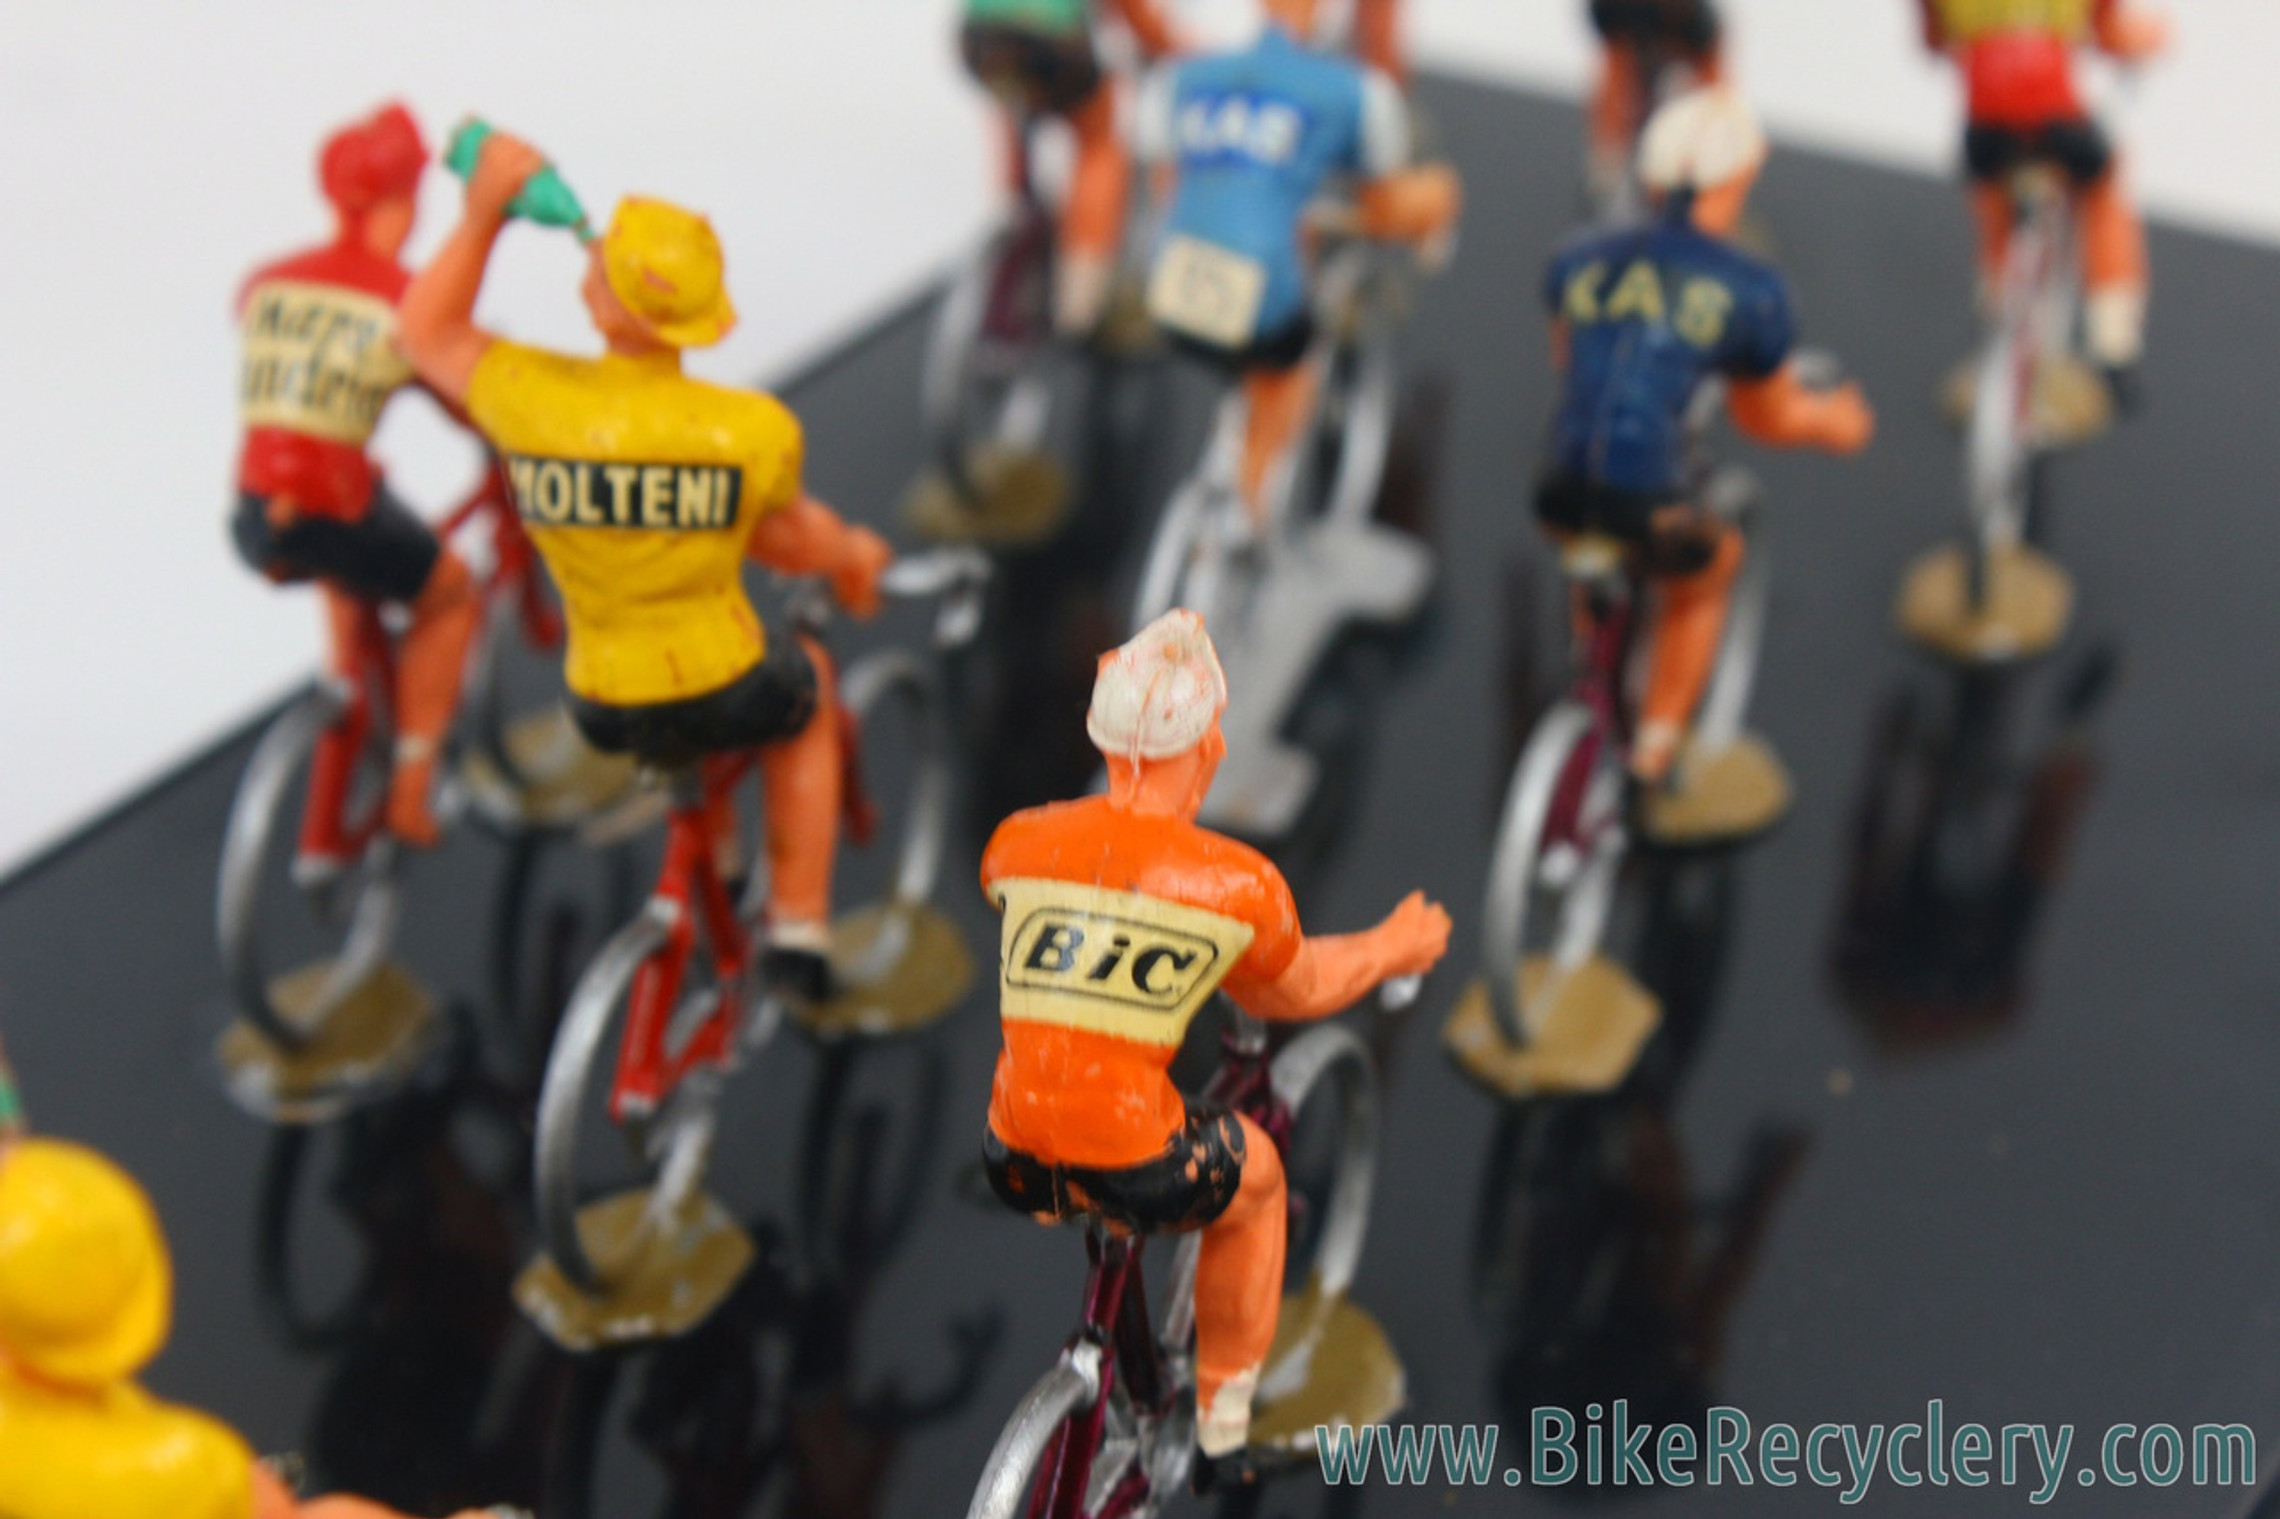 Cyclistes Roger Collector's - Le Tour de France miniature et sa caravane